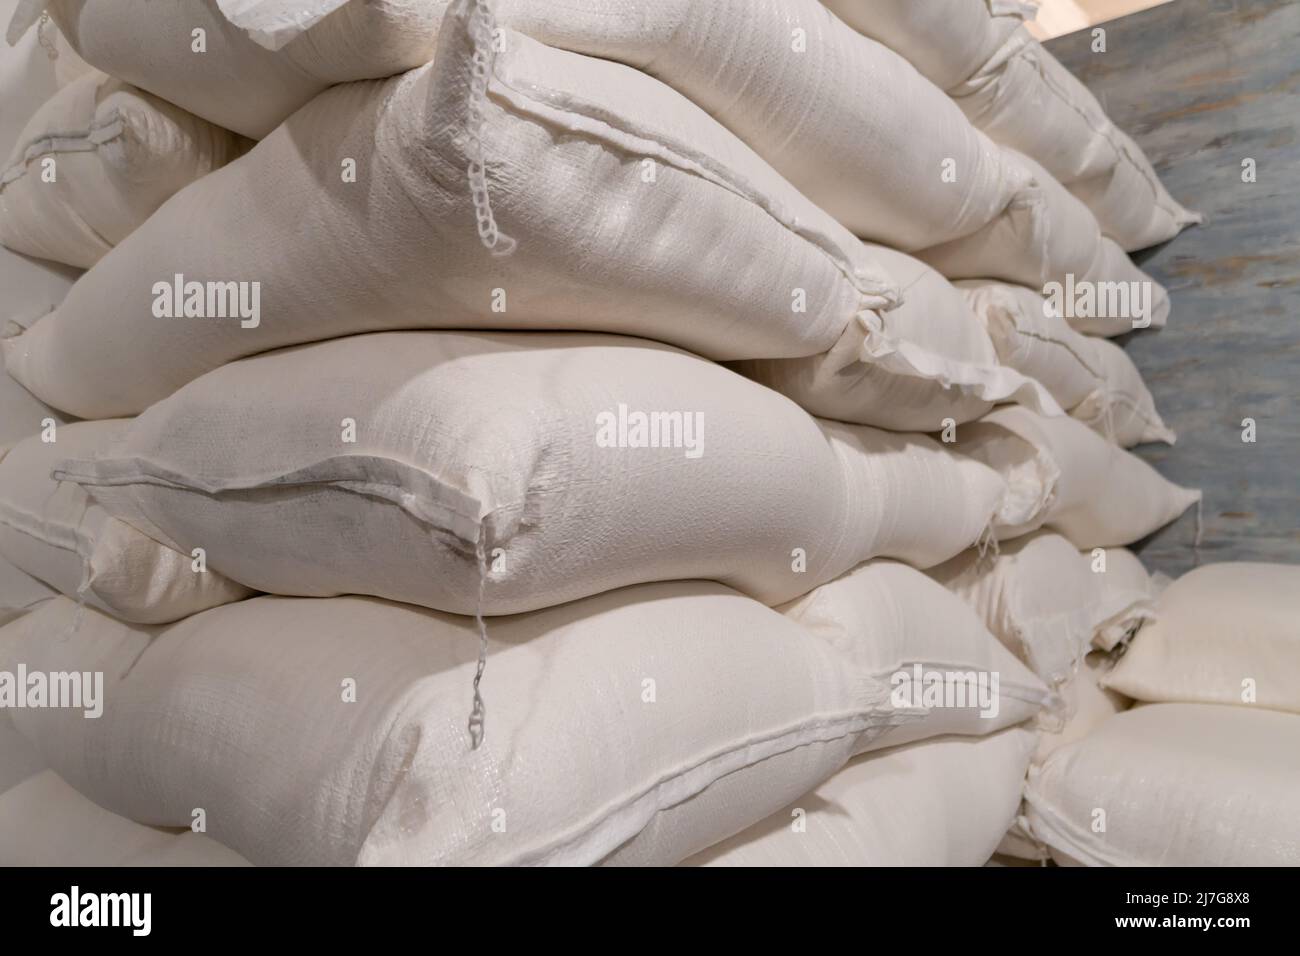 Gros plan de sacs de farine blanche dans un entrepôt ou une production Banque D'Images